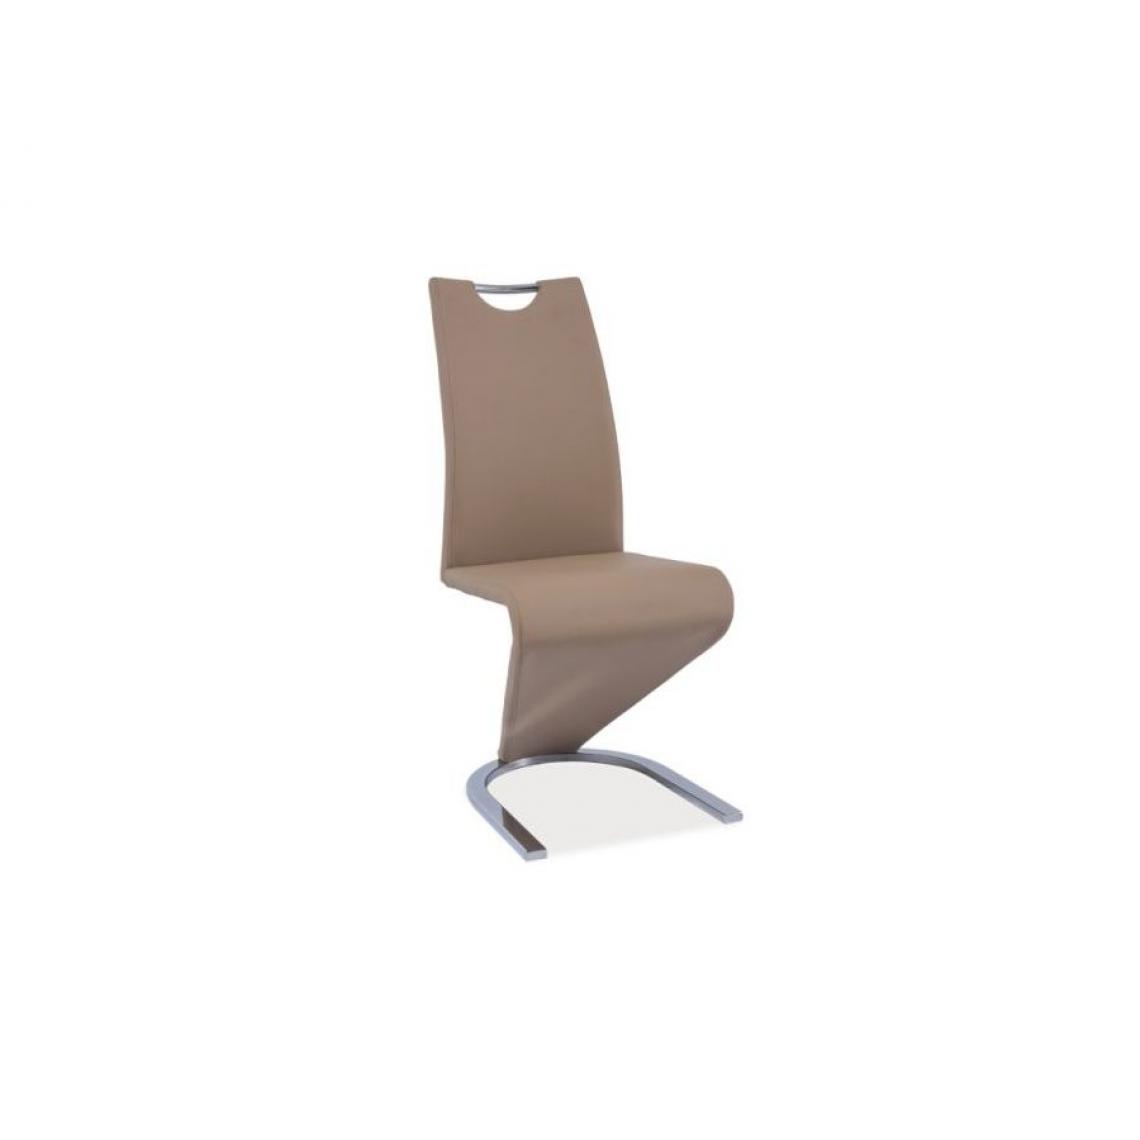 Hucoco - ENITA | Chaise minimaliste style moderne | Chaise salle à manger salon | Dimensions 102x43x45 cm | Rembourrage en cuir écologique - Beige - Chaises